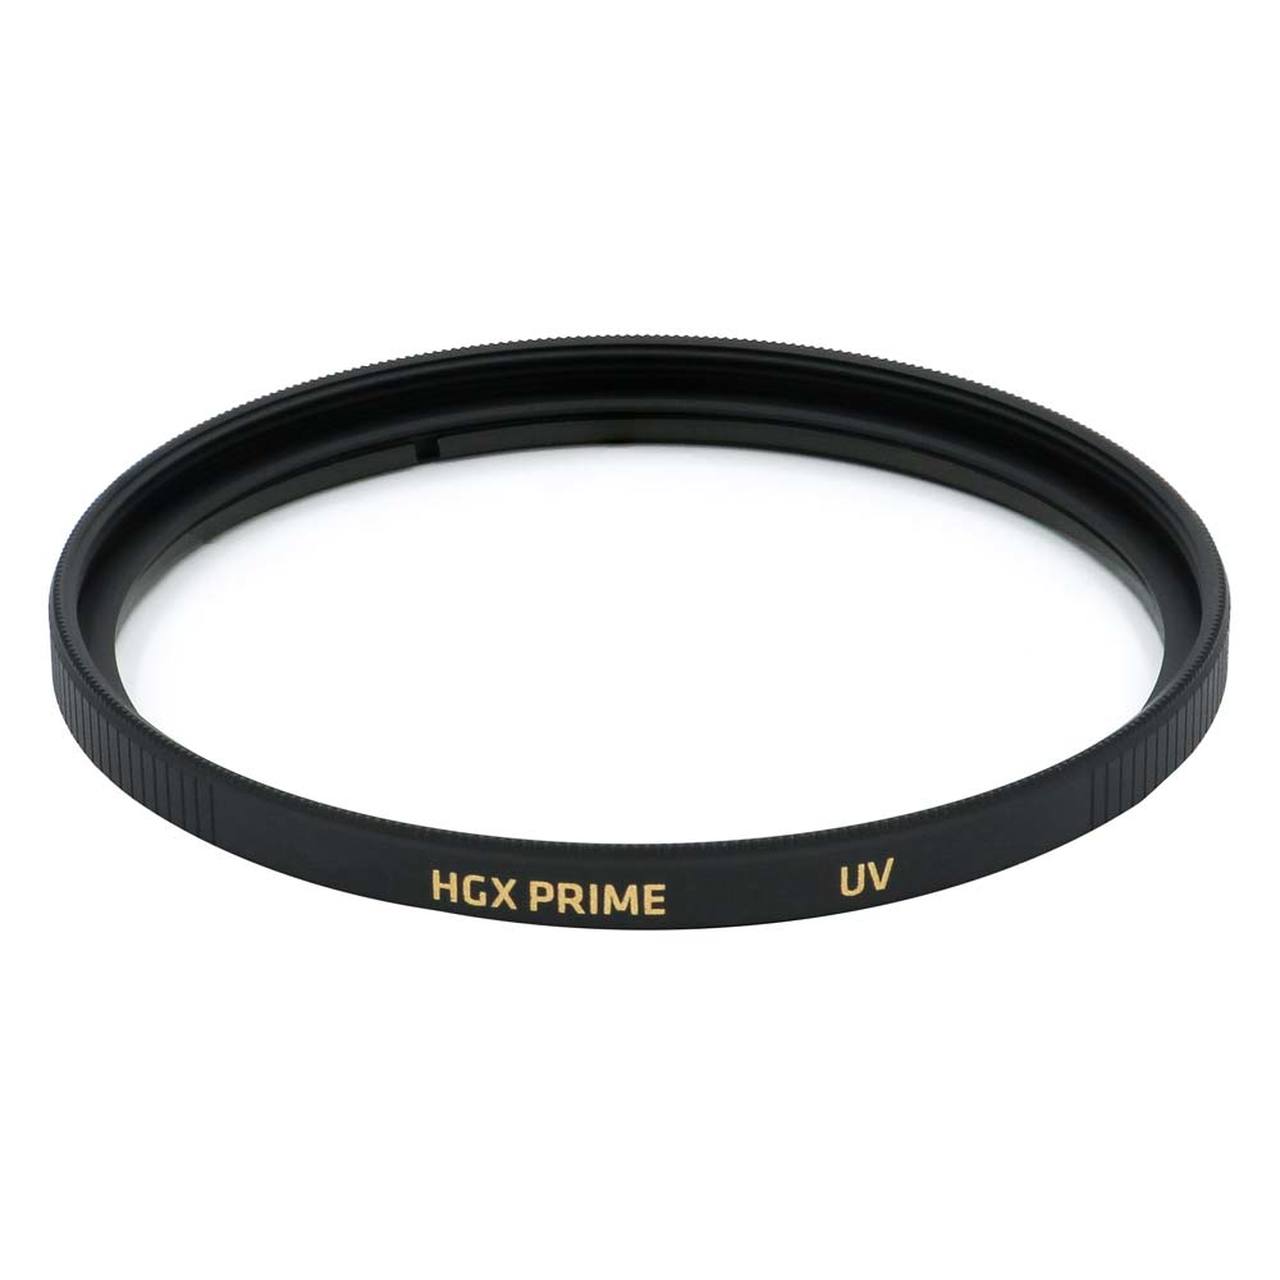 Promaster 6676 43mm UV HGX Prime Filter